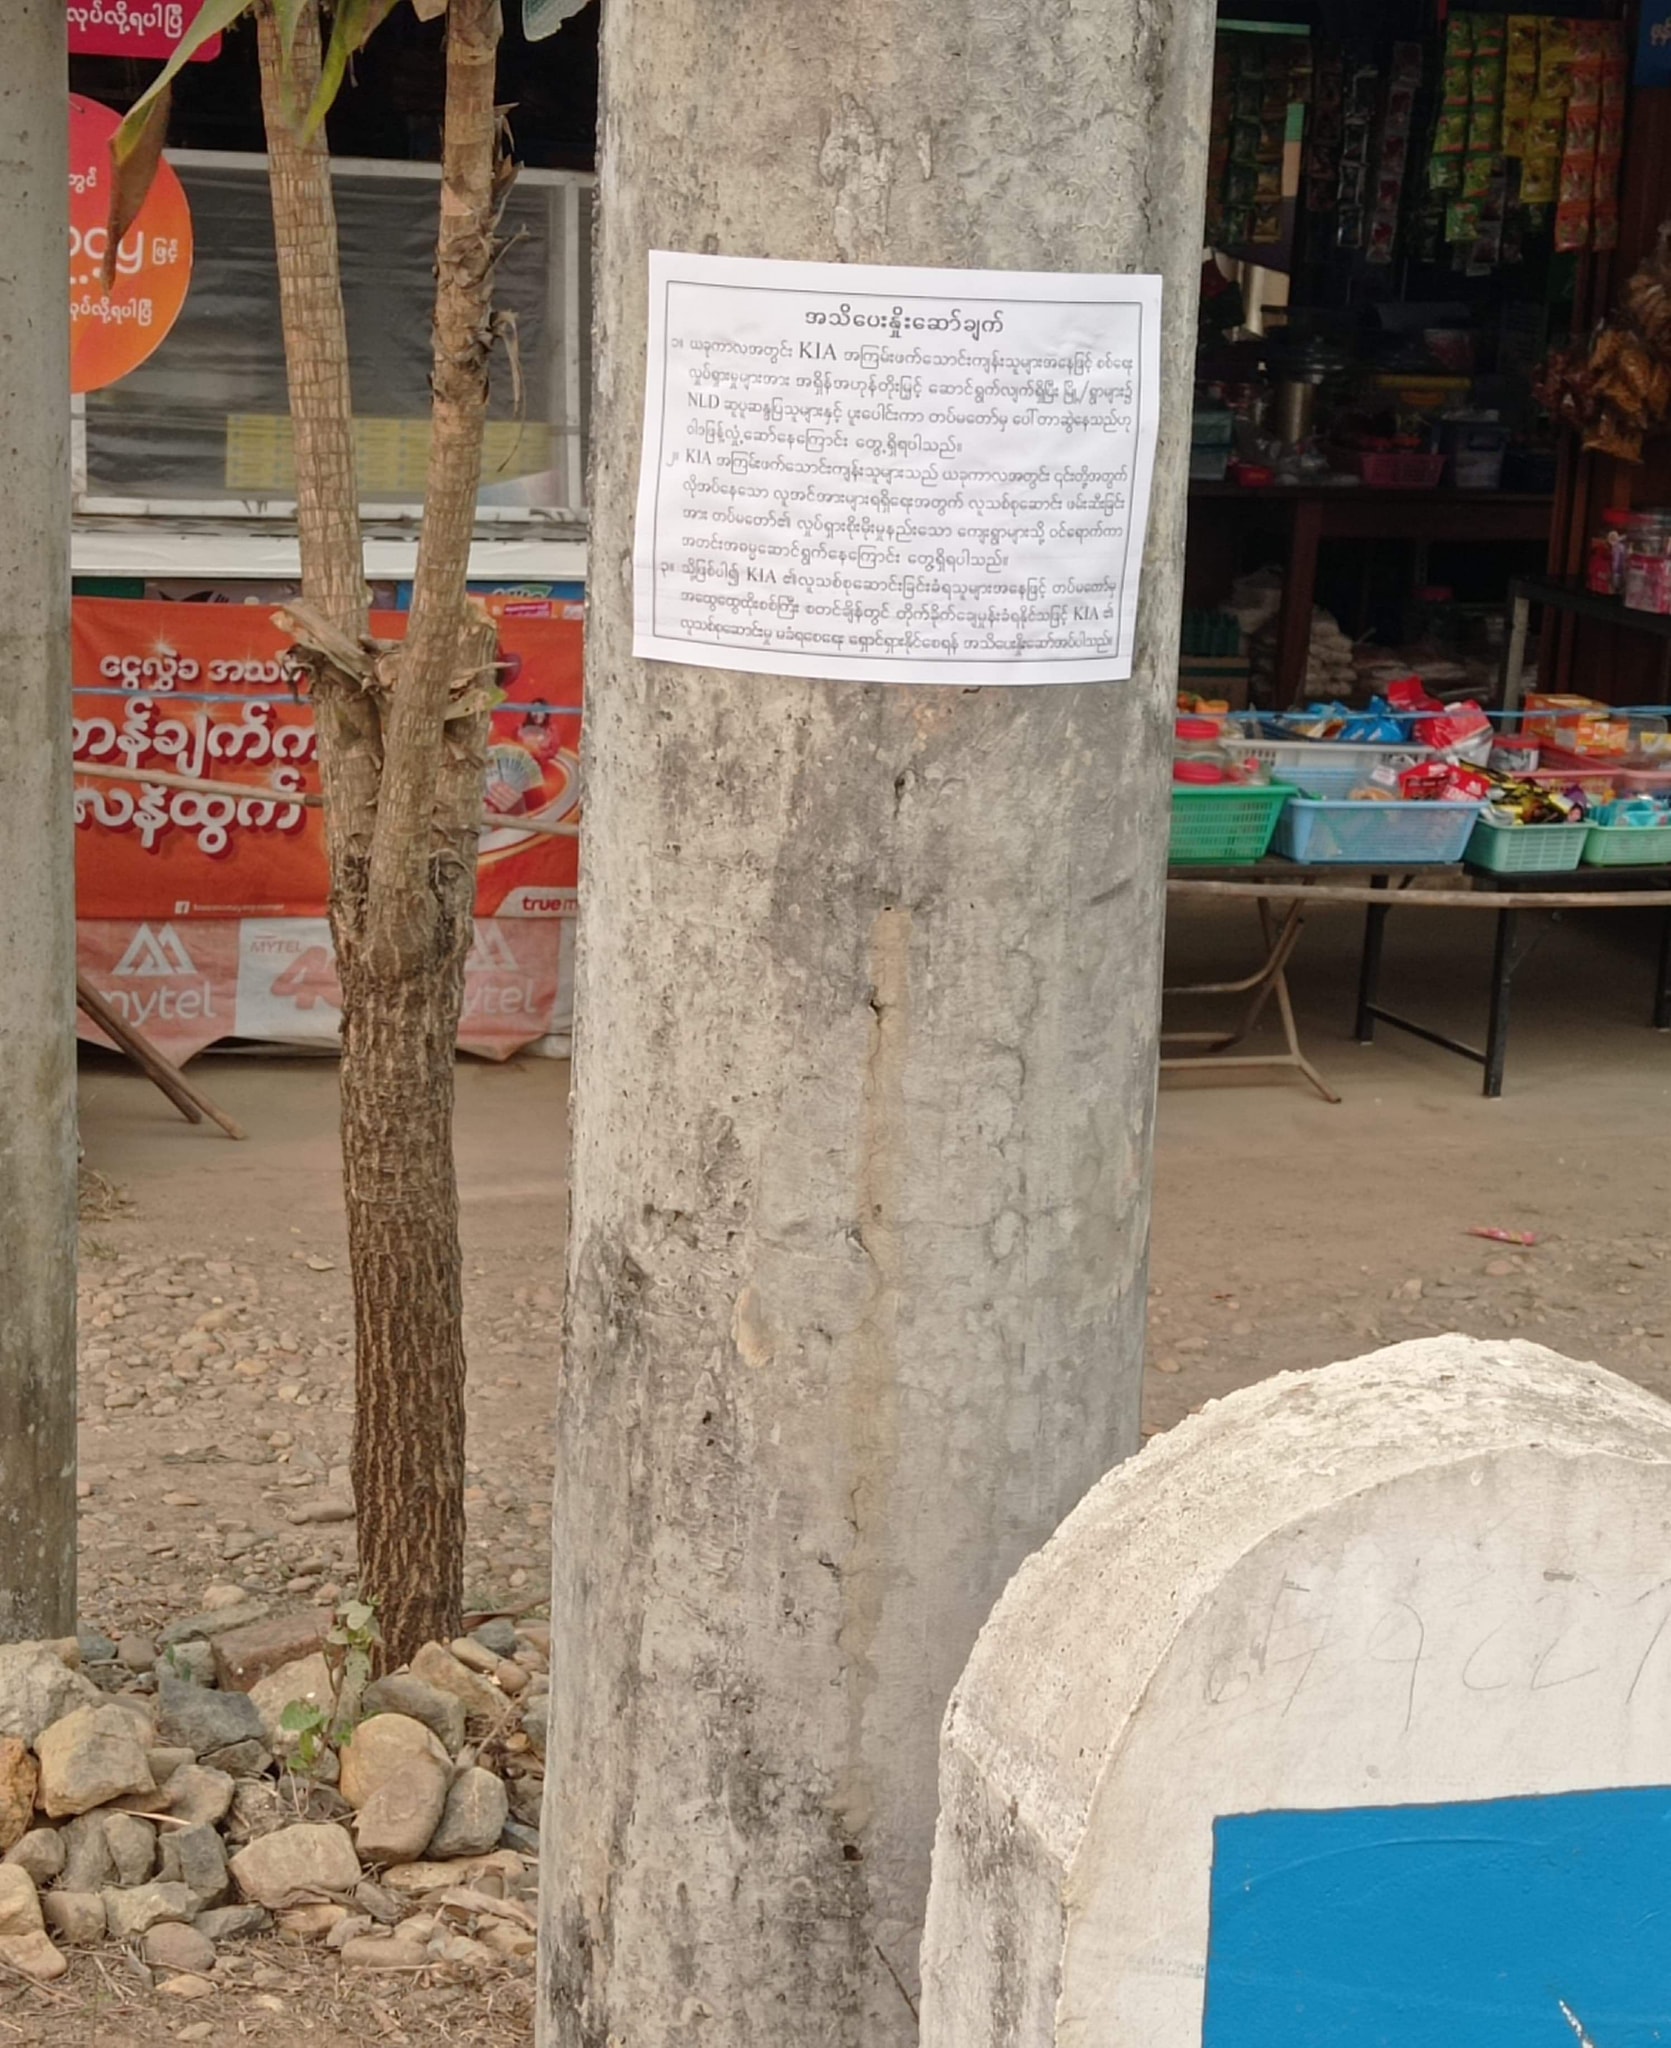 ကချင်ပြည်နယ်၊ နမ္မတီးမြို့တွင် သတိပေးနှိုးဆော်ချက် စာများ ယနေ့နံနက်တွင် လိုက်လံကပ်ထား